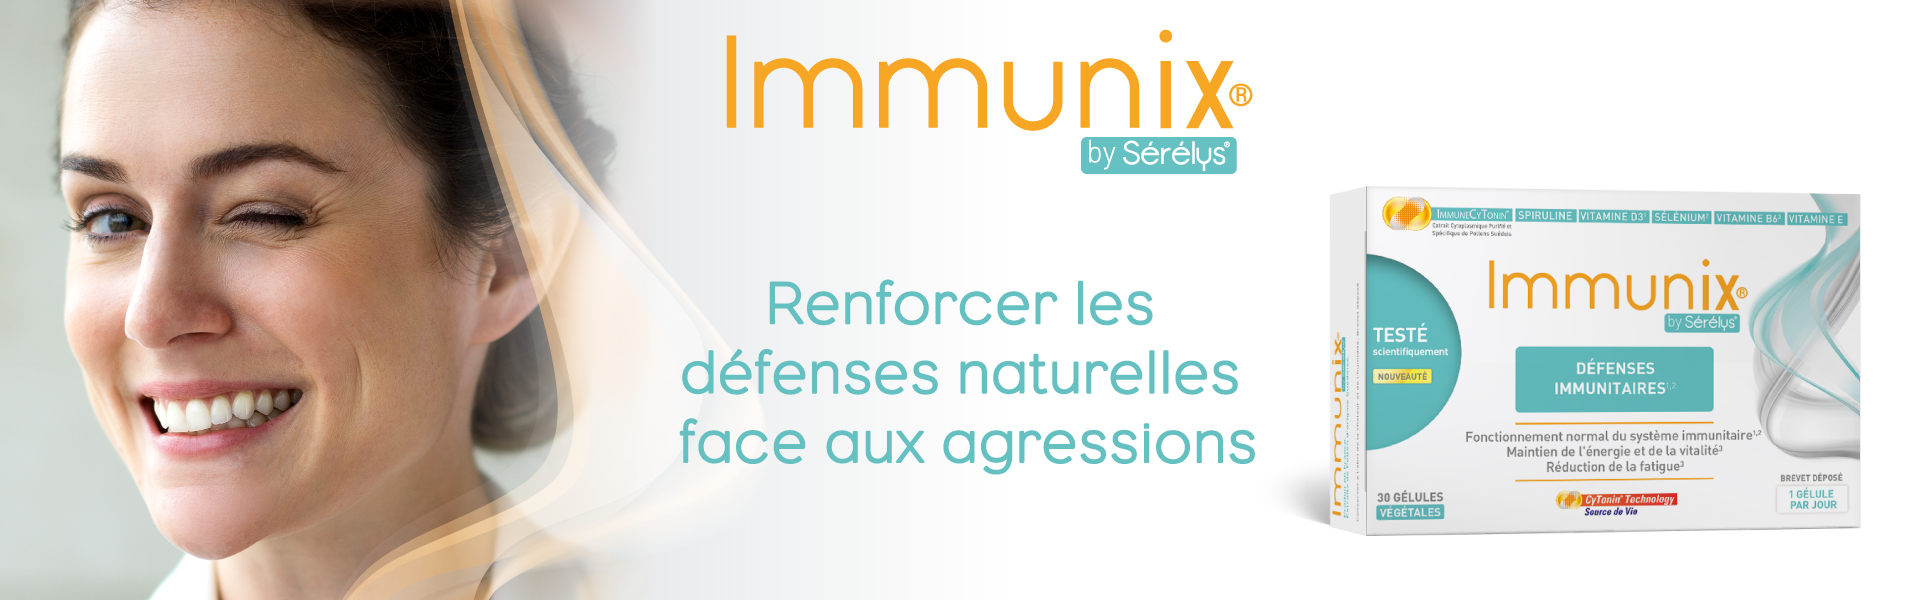 Immunix by Sérélys